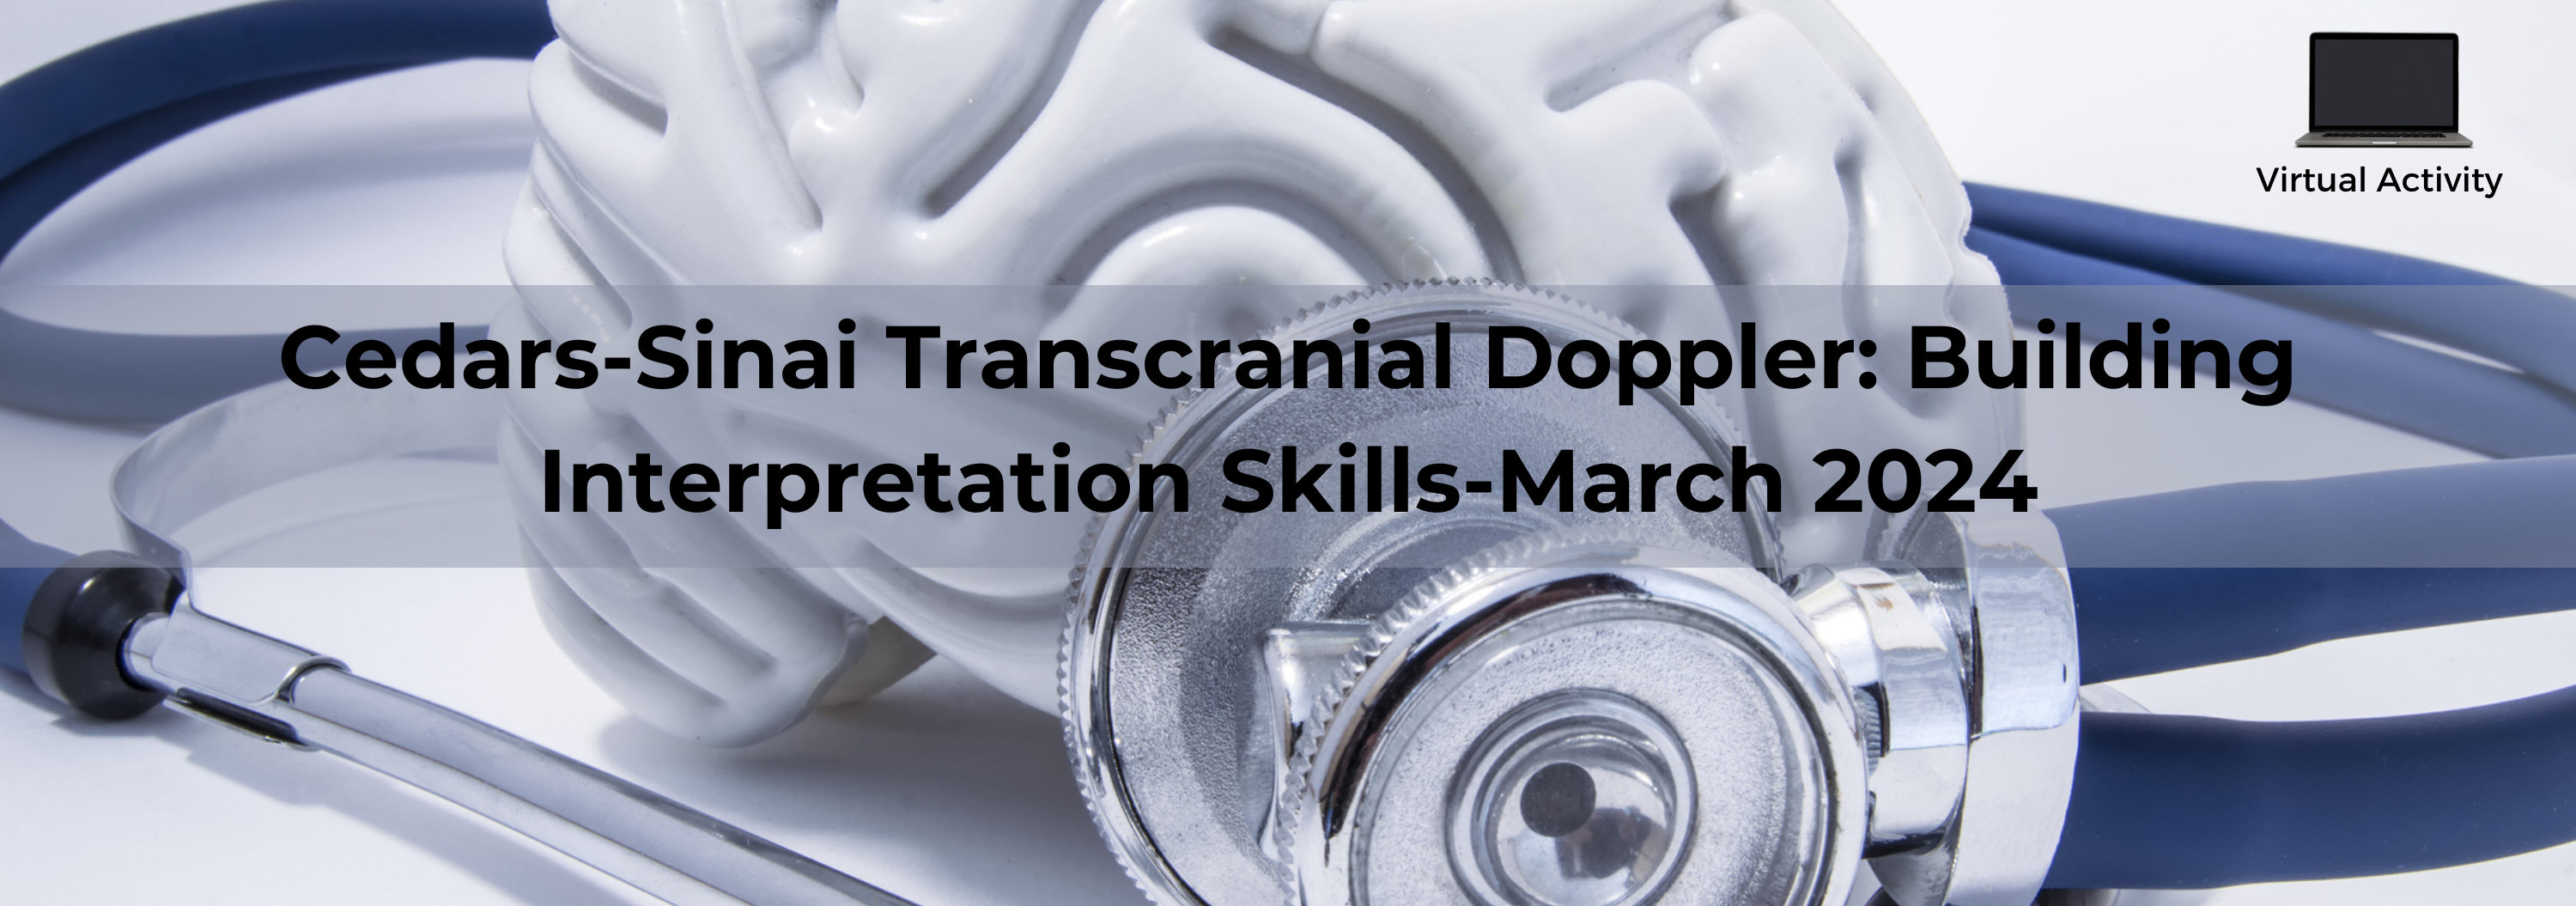 Cedars-Sinai Transcranial Doppler: Building Interpretation Skills-March 2024 Banner